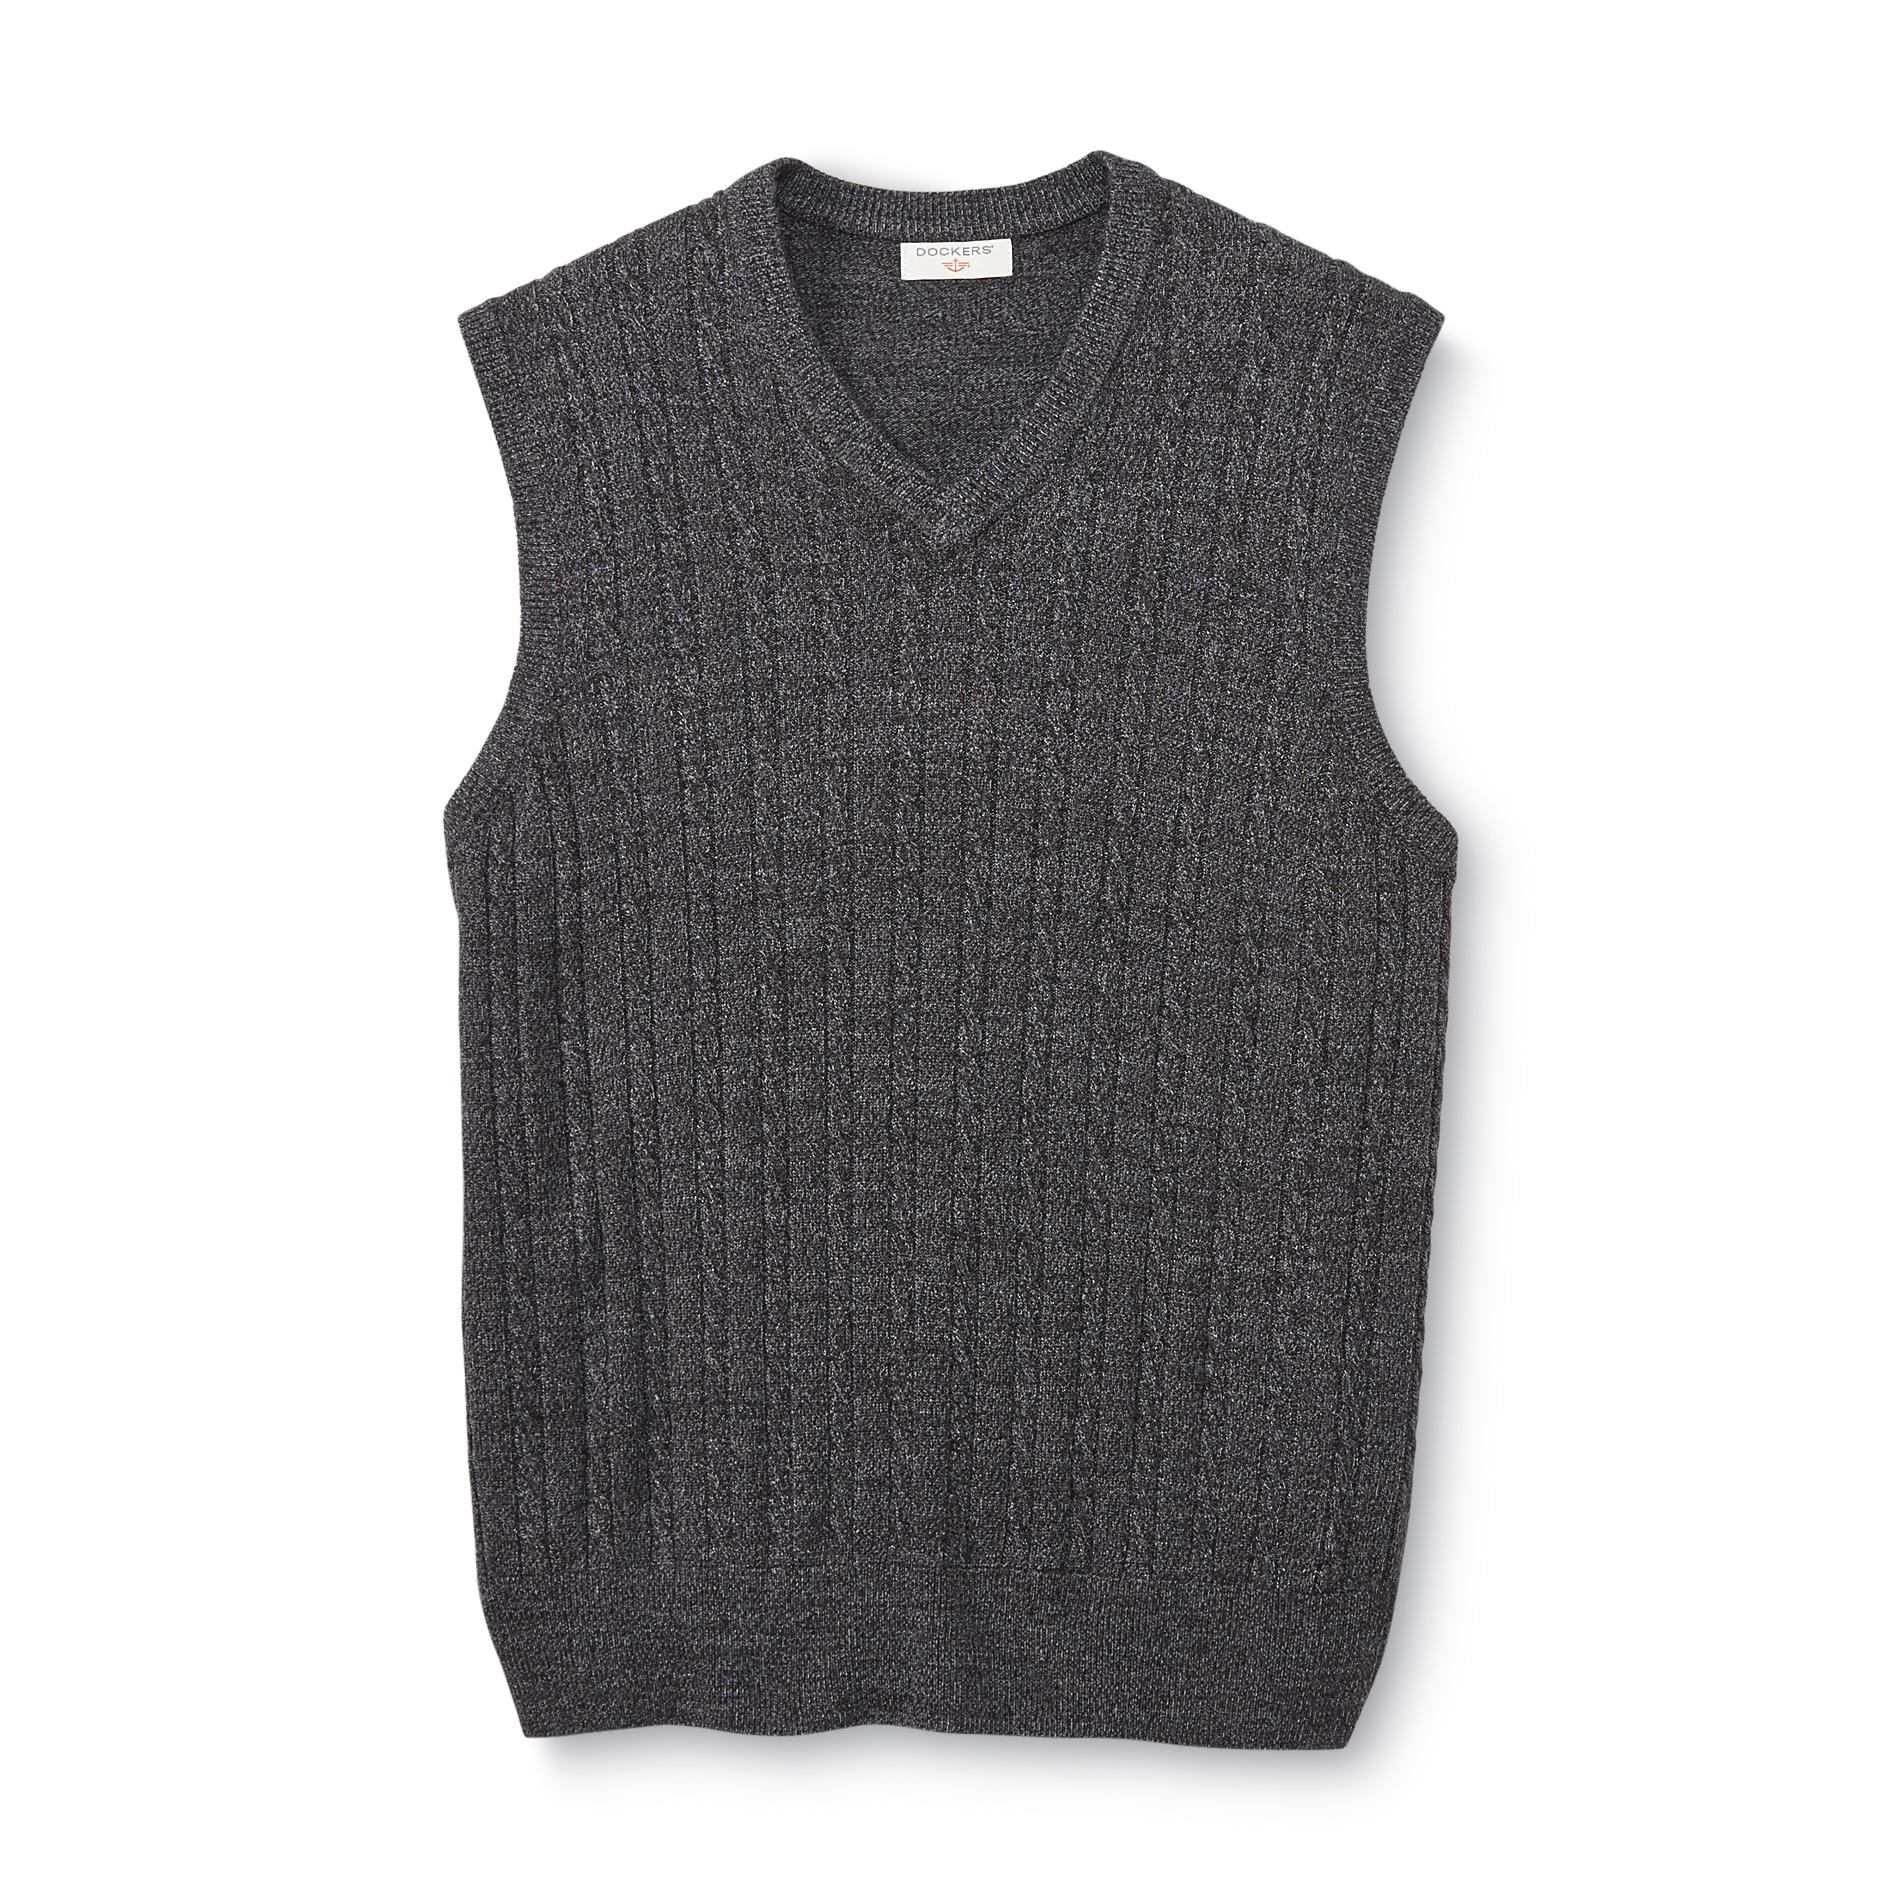 Dockers Men's Sweater Vest